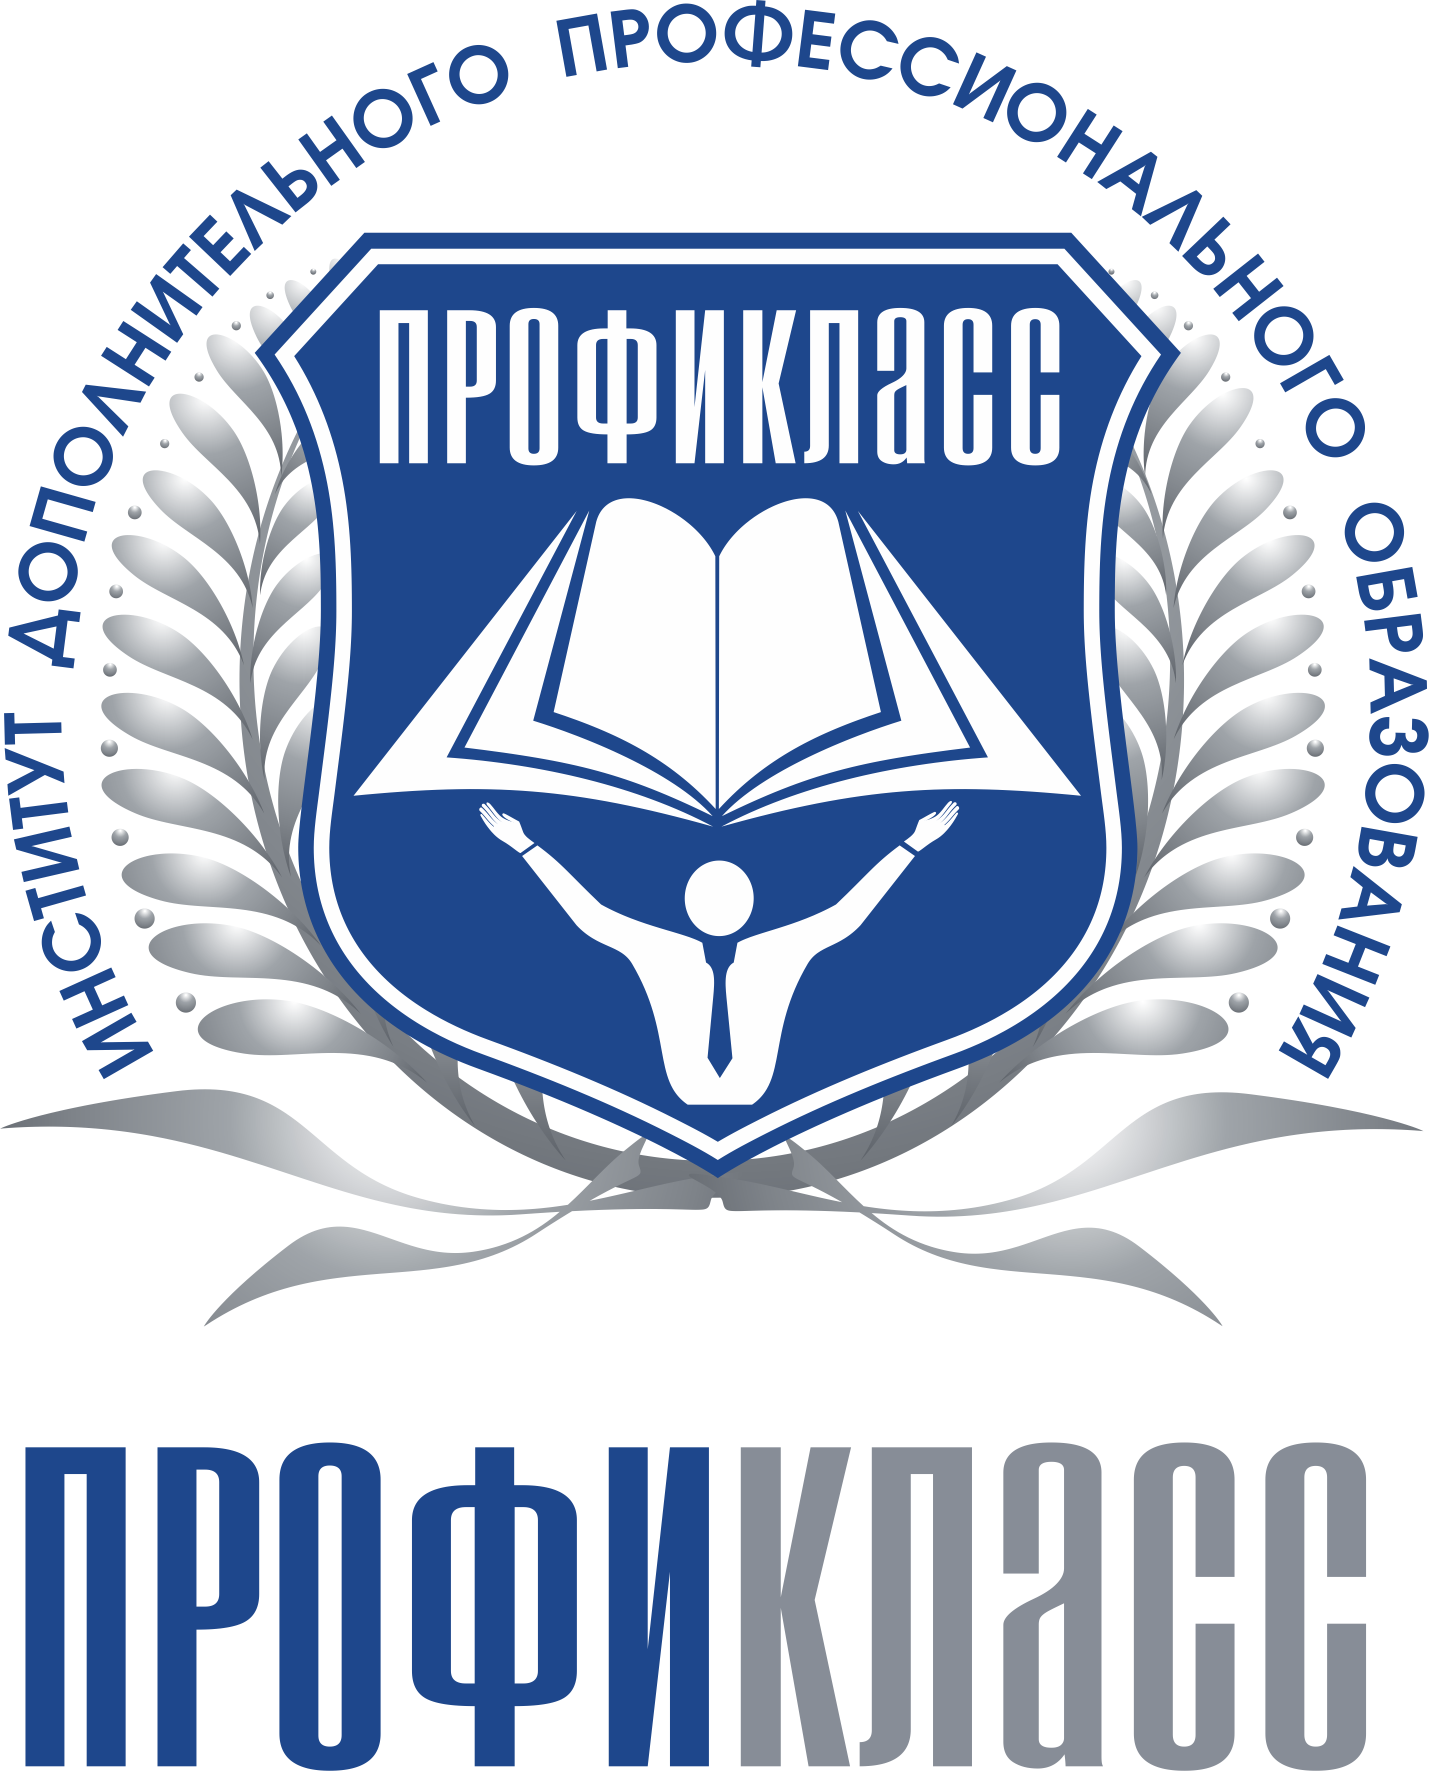 Институт дополнительного профессионального образования «Профикласс» - Город Зеленоград logo png.png